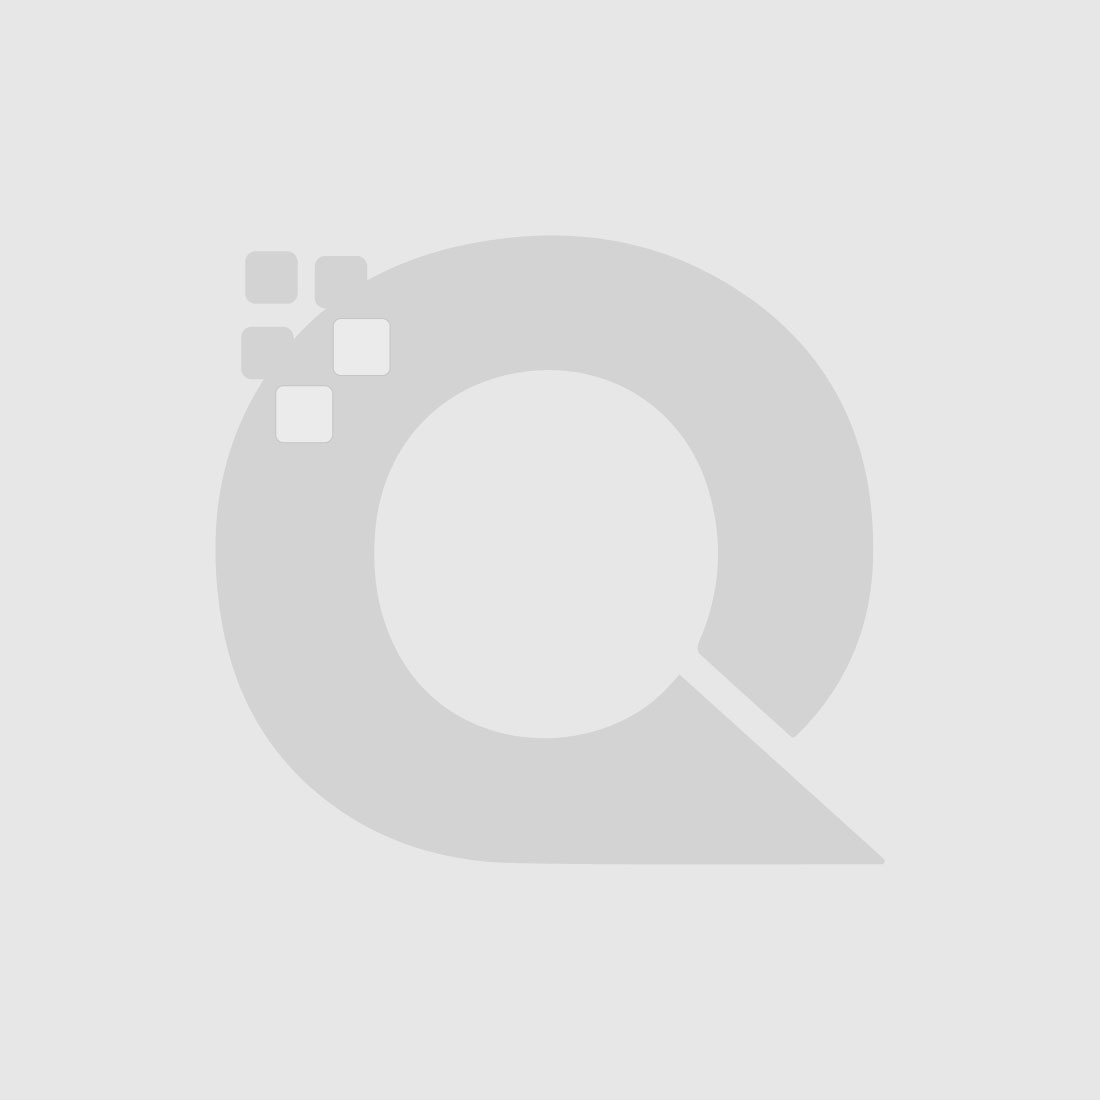 Guerniss Paris Velvet Matte Lipstick - GS001 - 3.5g